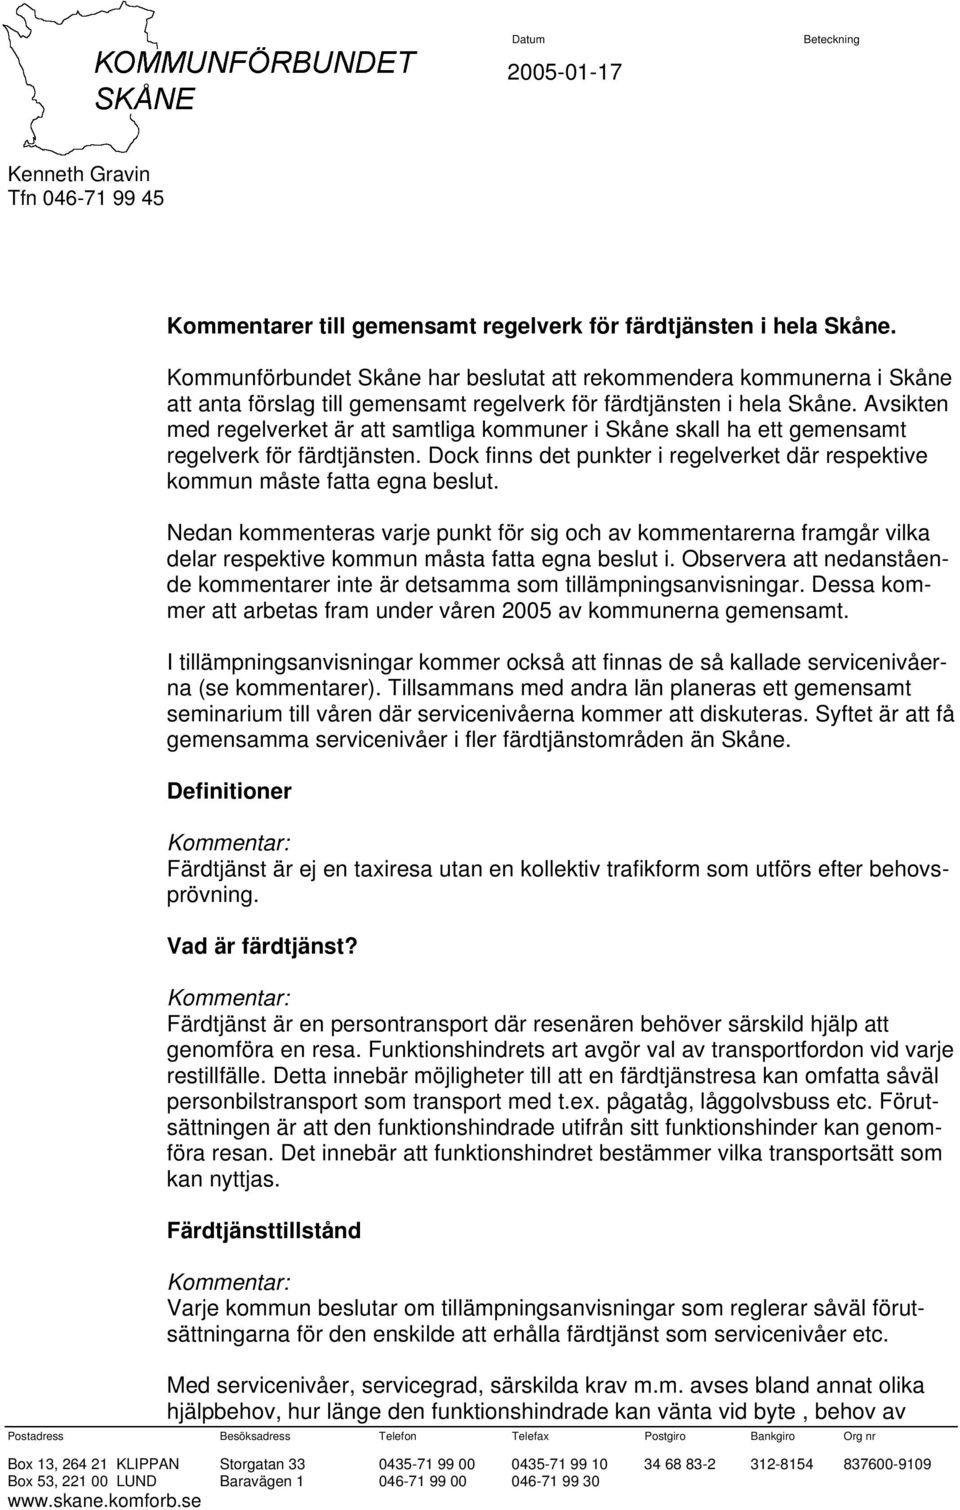 Avsikten med regelverket är att samtliga kommuner i Skåne skall ha ett gemensamt regelverk för färdtjänsten. Dock finns det punkter i regelverket där respektive kommun måste fatta egna beslut.